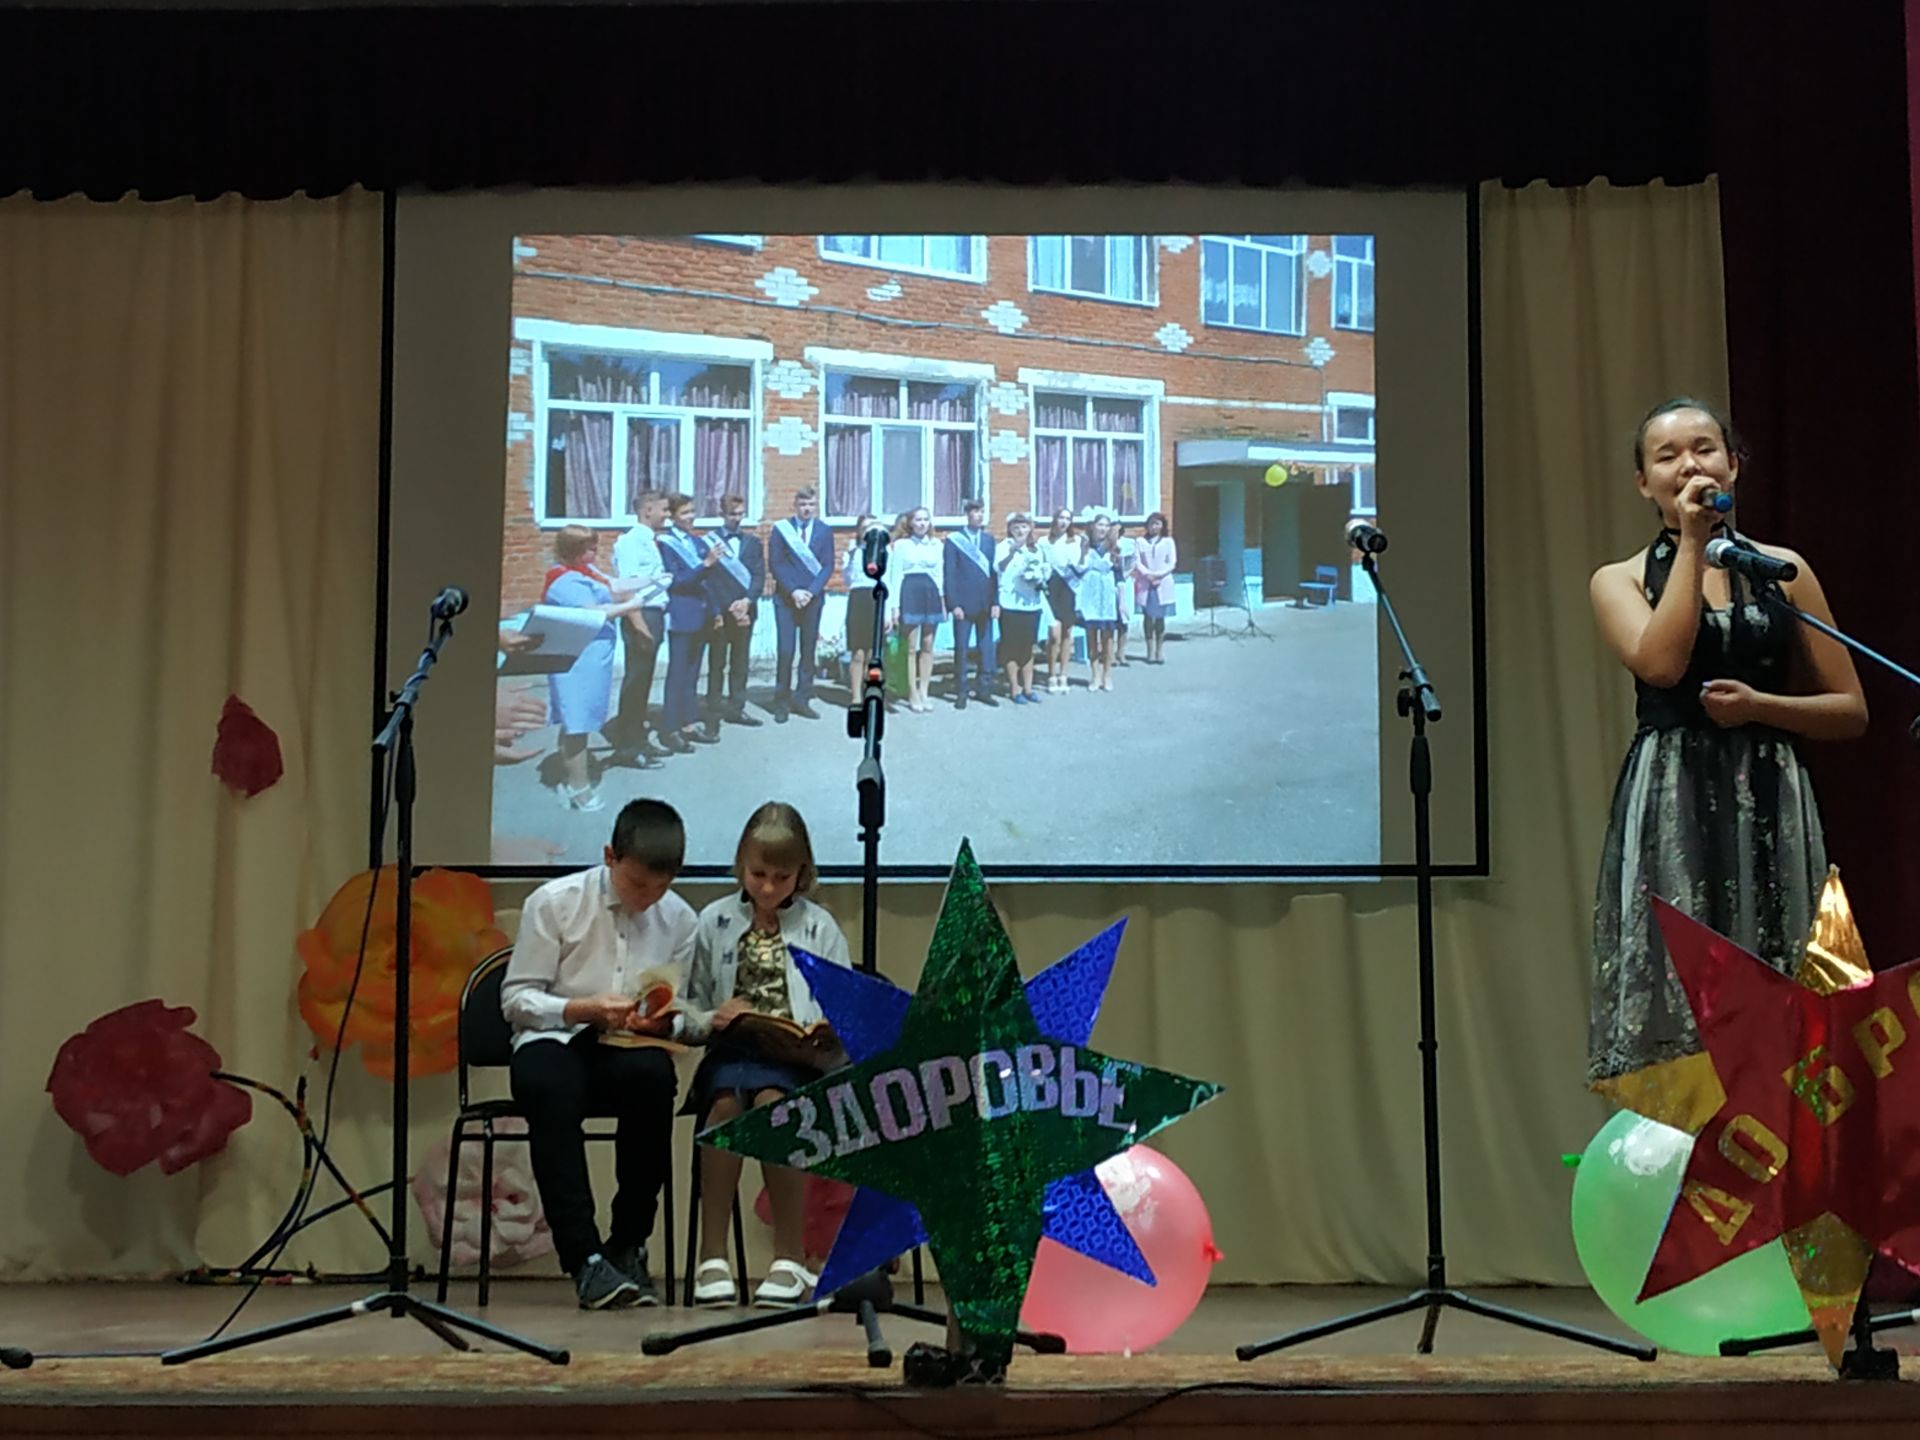 В Спасском районе прошел конкурс среди родительских комитетов (ФОТО)